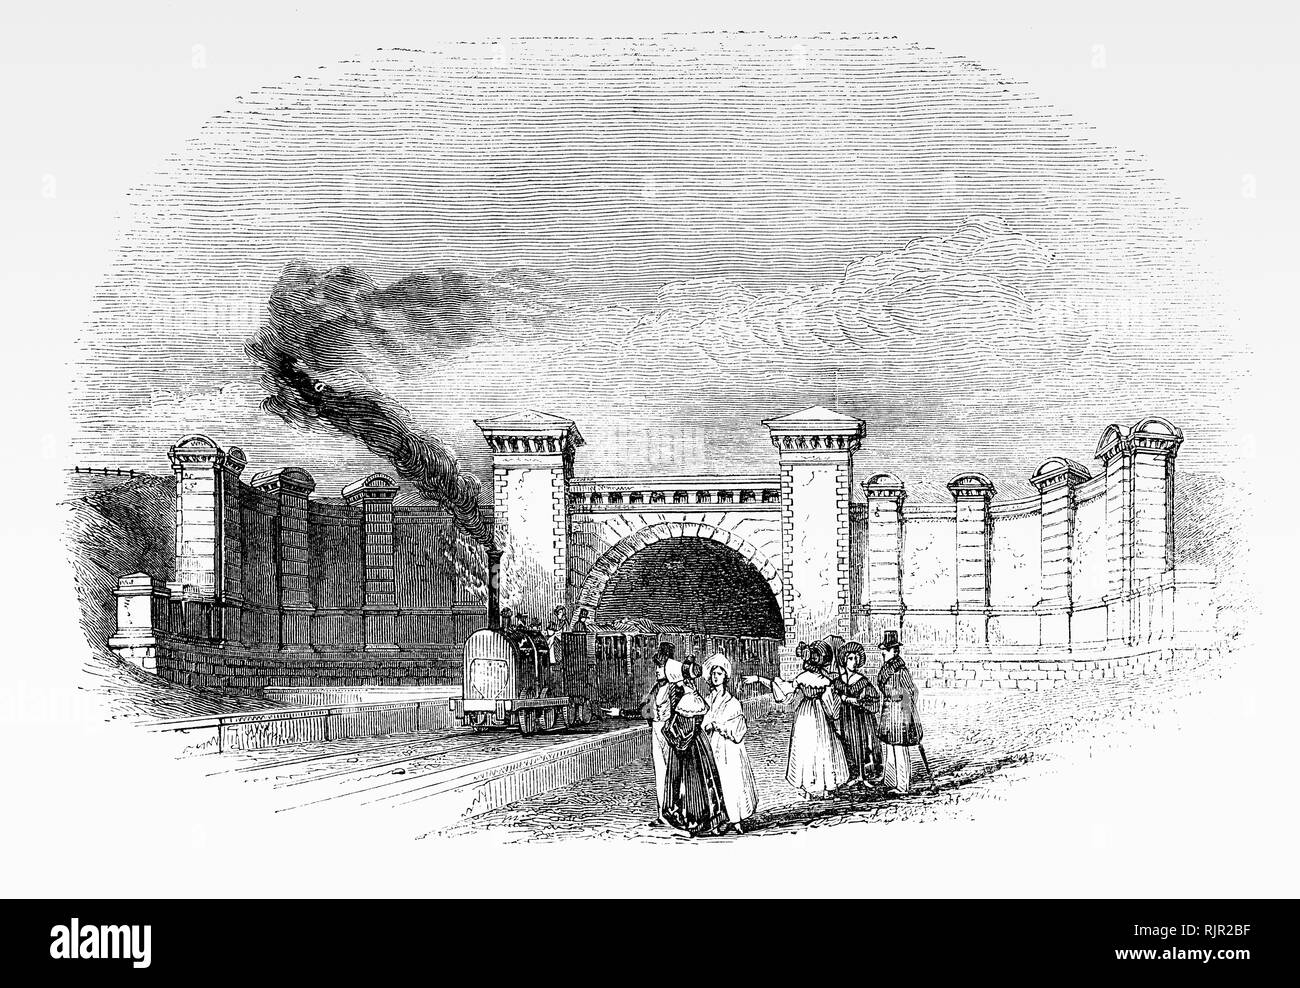 Der Eisenbahntunnel in Primrose Hill in der Nähe des Bahnhofs, im Londoner Stadtteil Camden, London, England. Es wurde am 5. Mai 1855 als Teil der ersten Ice-zwischen London und Birmingham (L&BR) von George und Robert Stephenson geplante geöffnet. Stockfoto